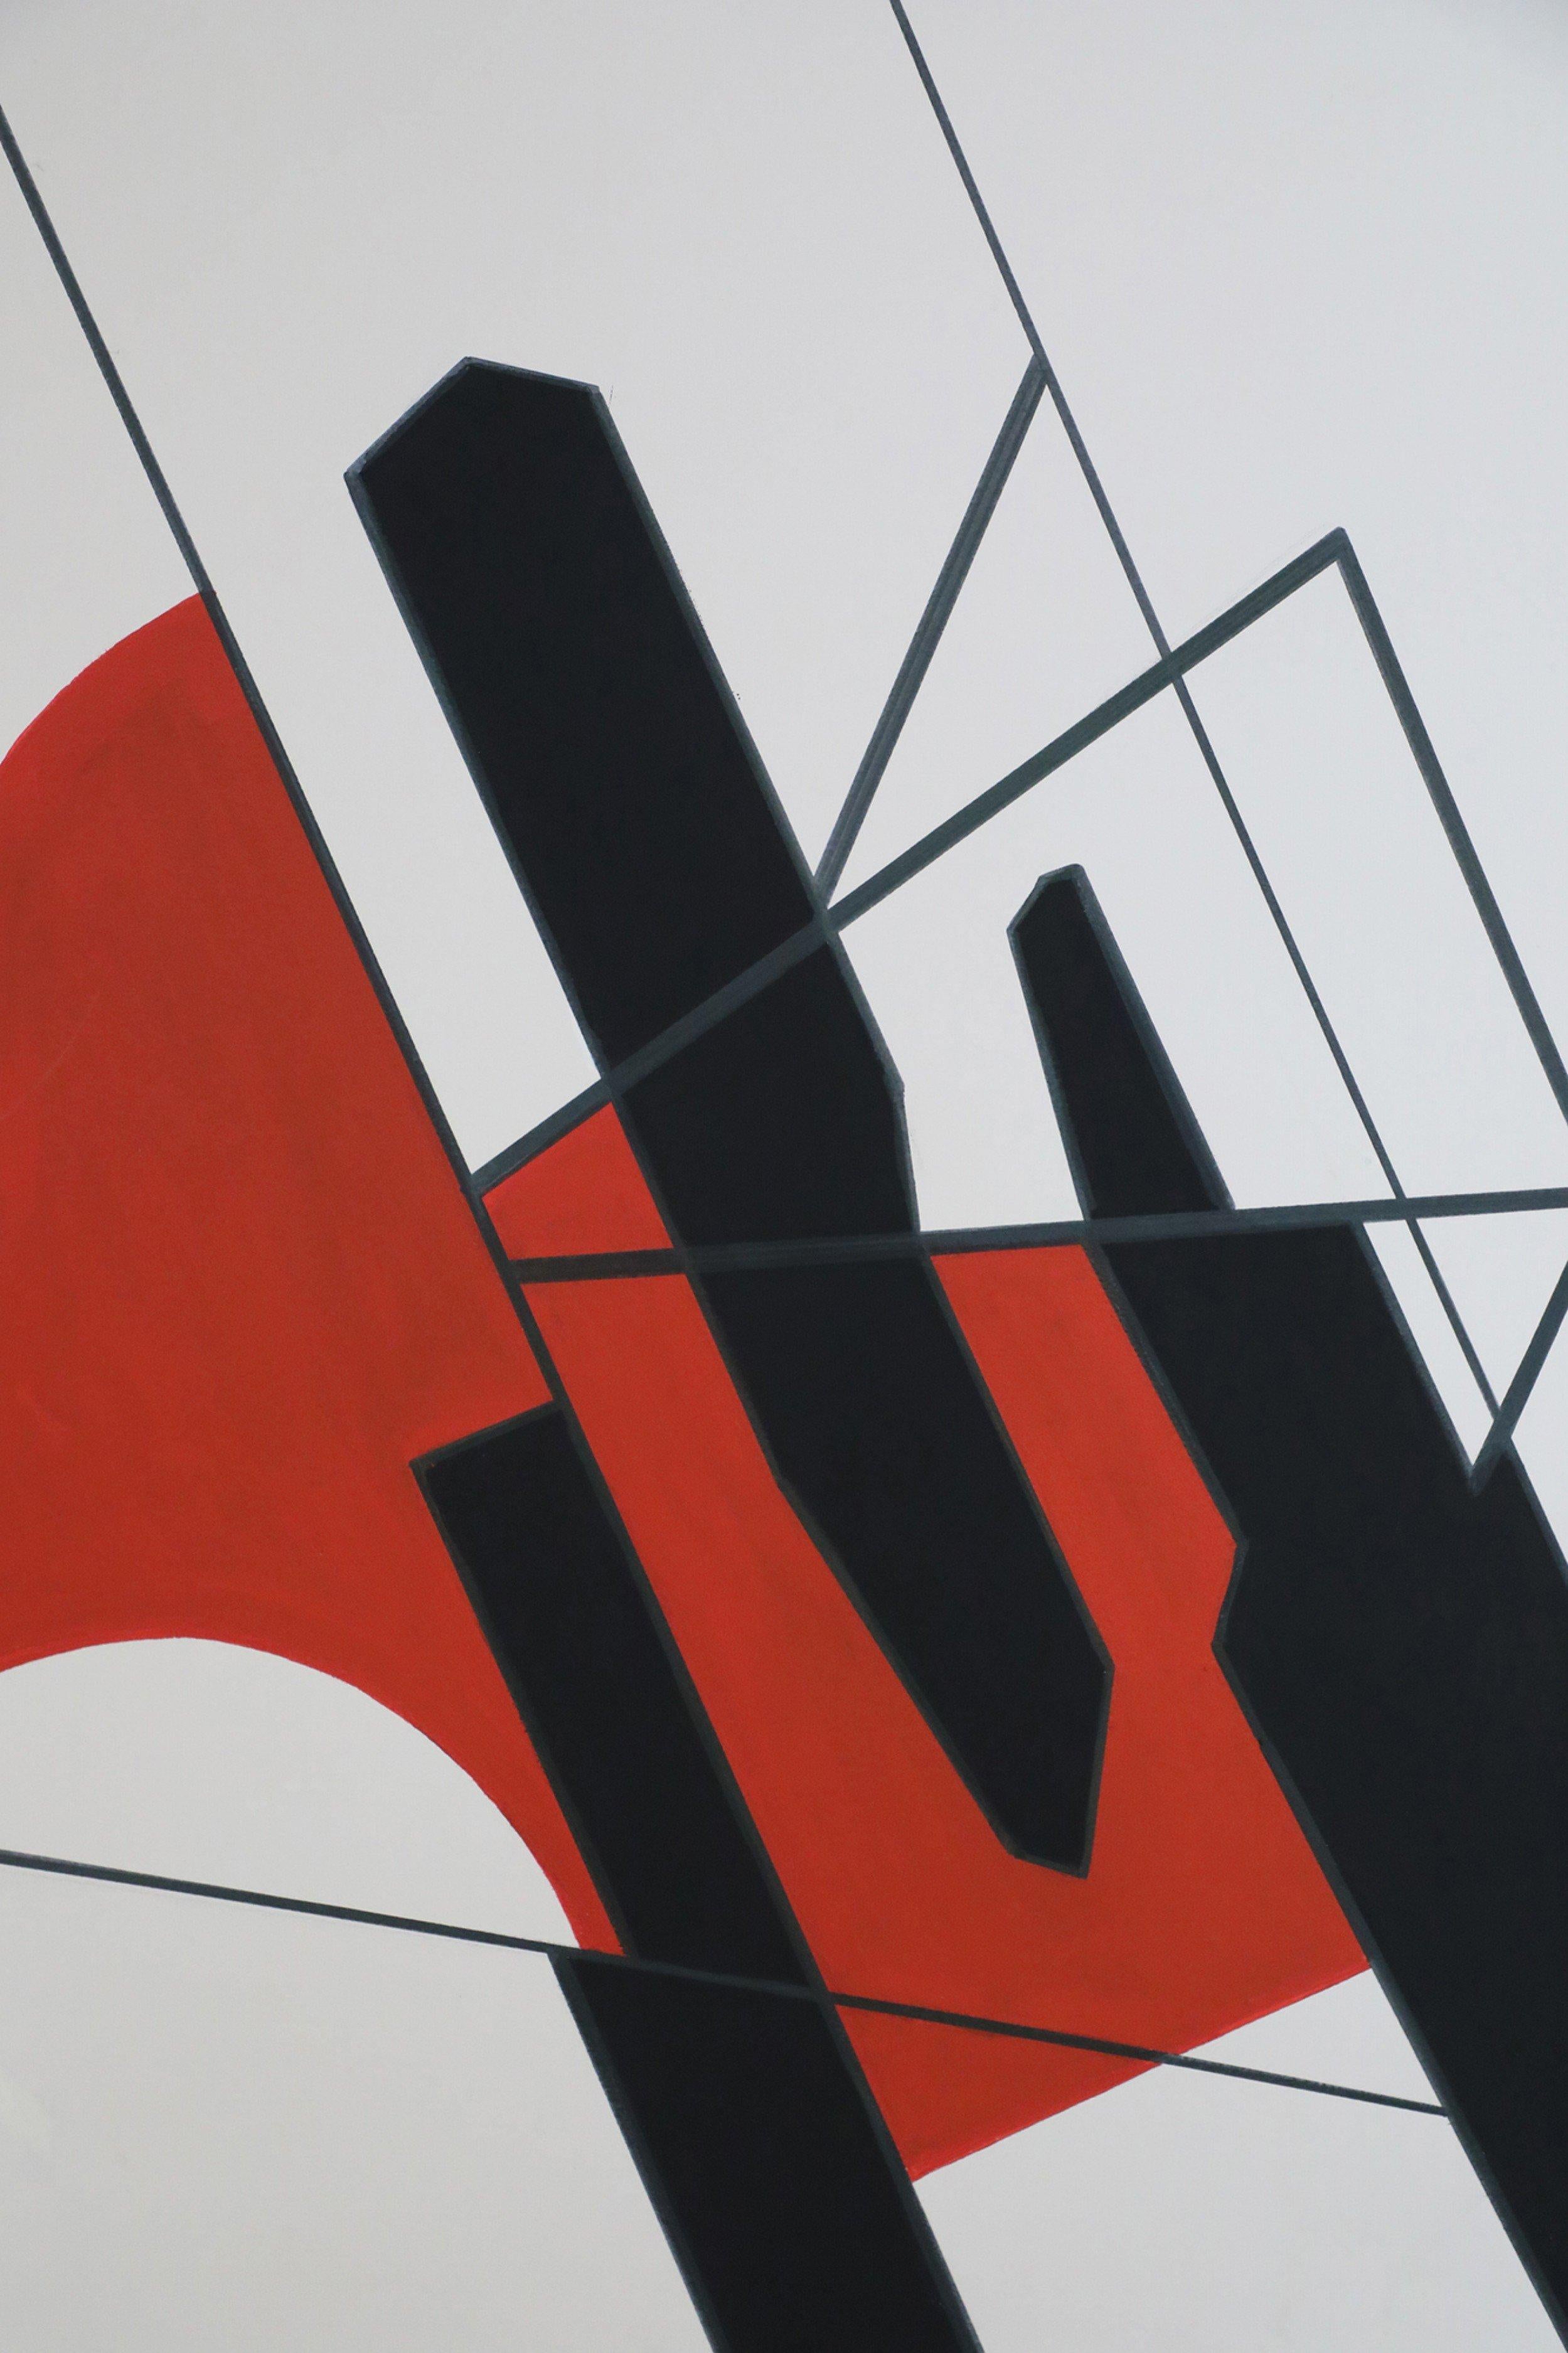 Peinture abstraite du milieu du siècle en acrylique sur toile présentant des formes géométriques en noir et rouge sur un fond de couleur crème dans un cadre rectangulaire en bois peint en noir.
  